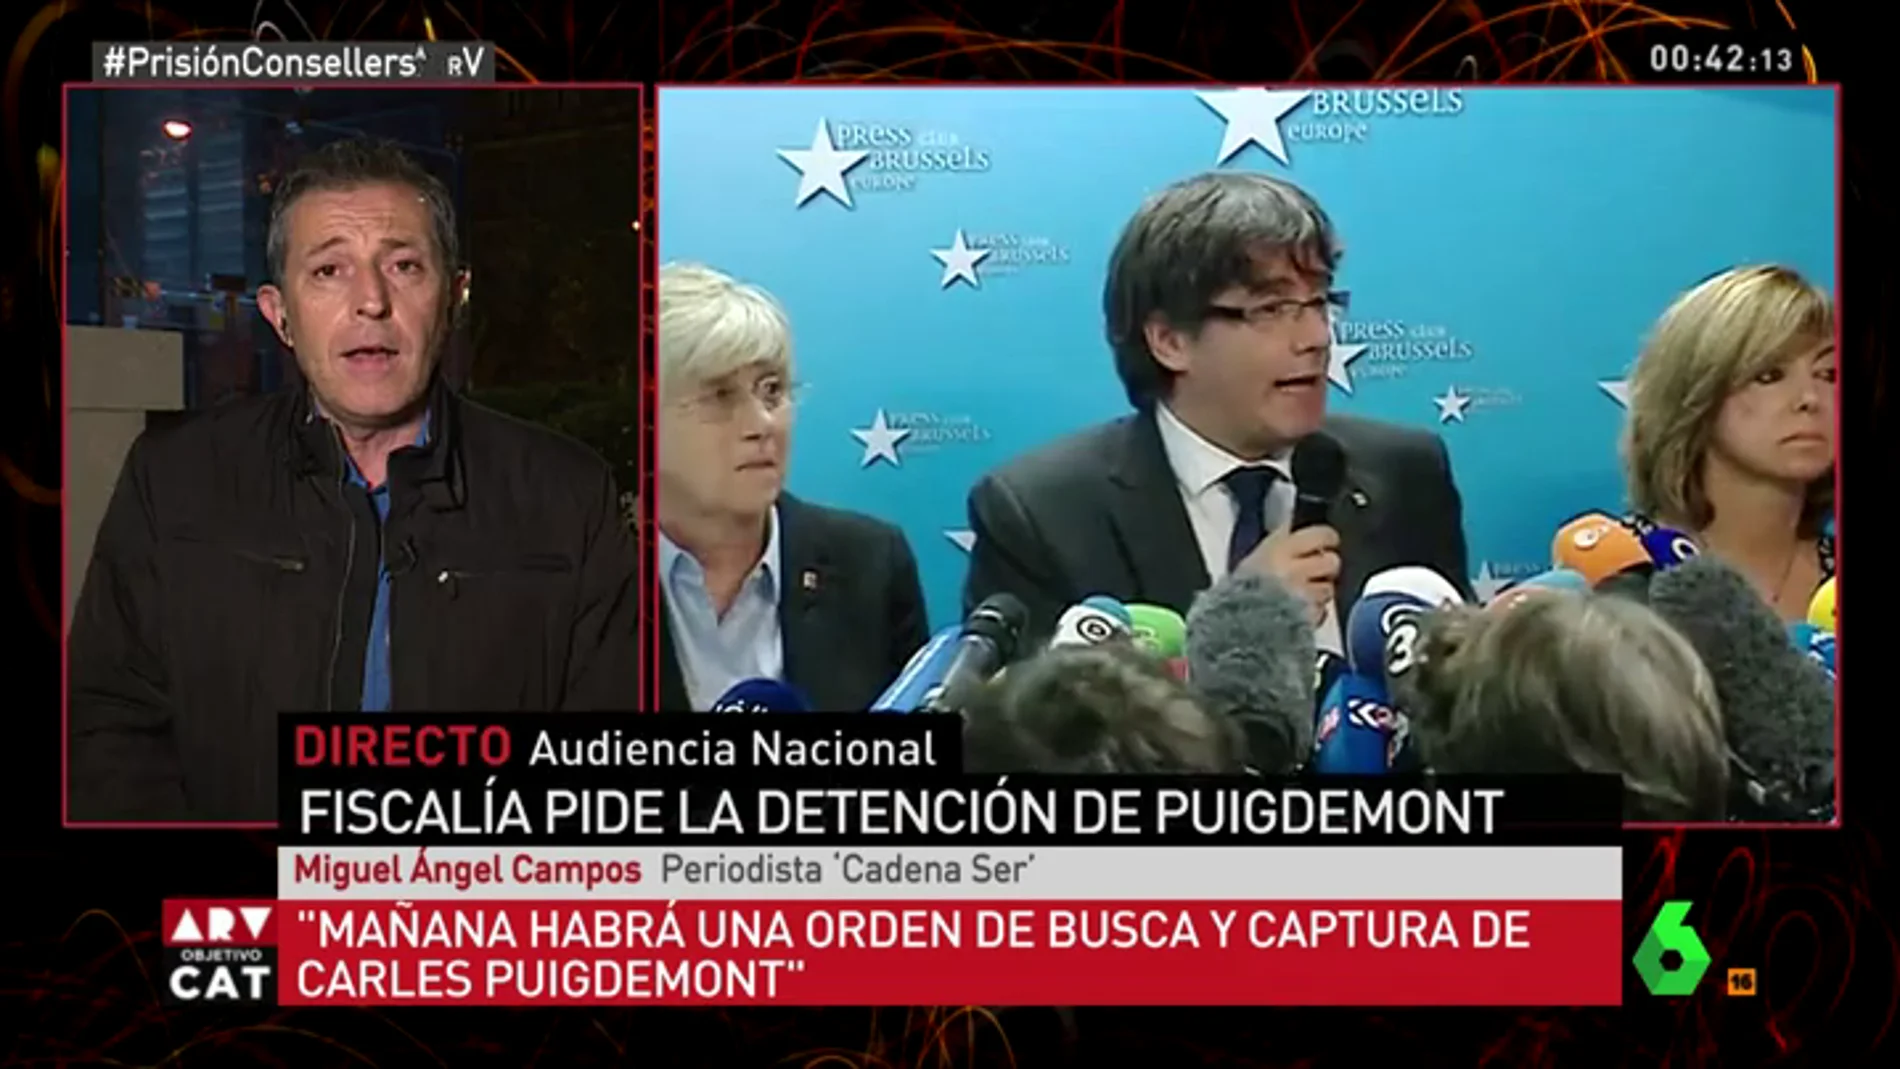 Miguel Ángel Campos: "Mañana habrá una orden de busca y captura de Carles Puigdemont"